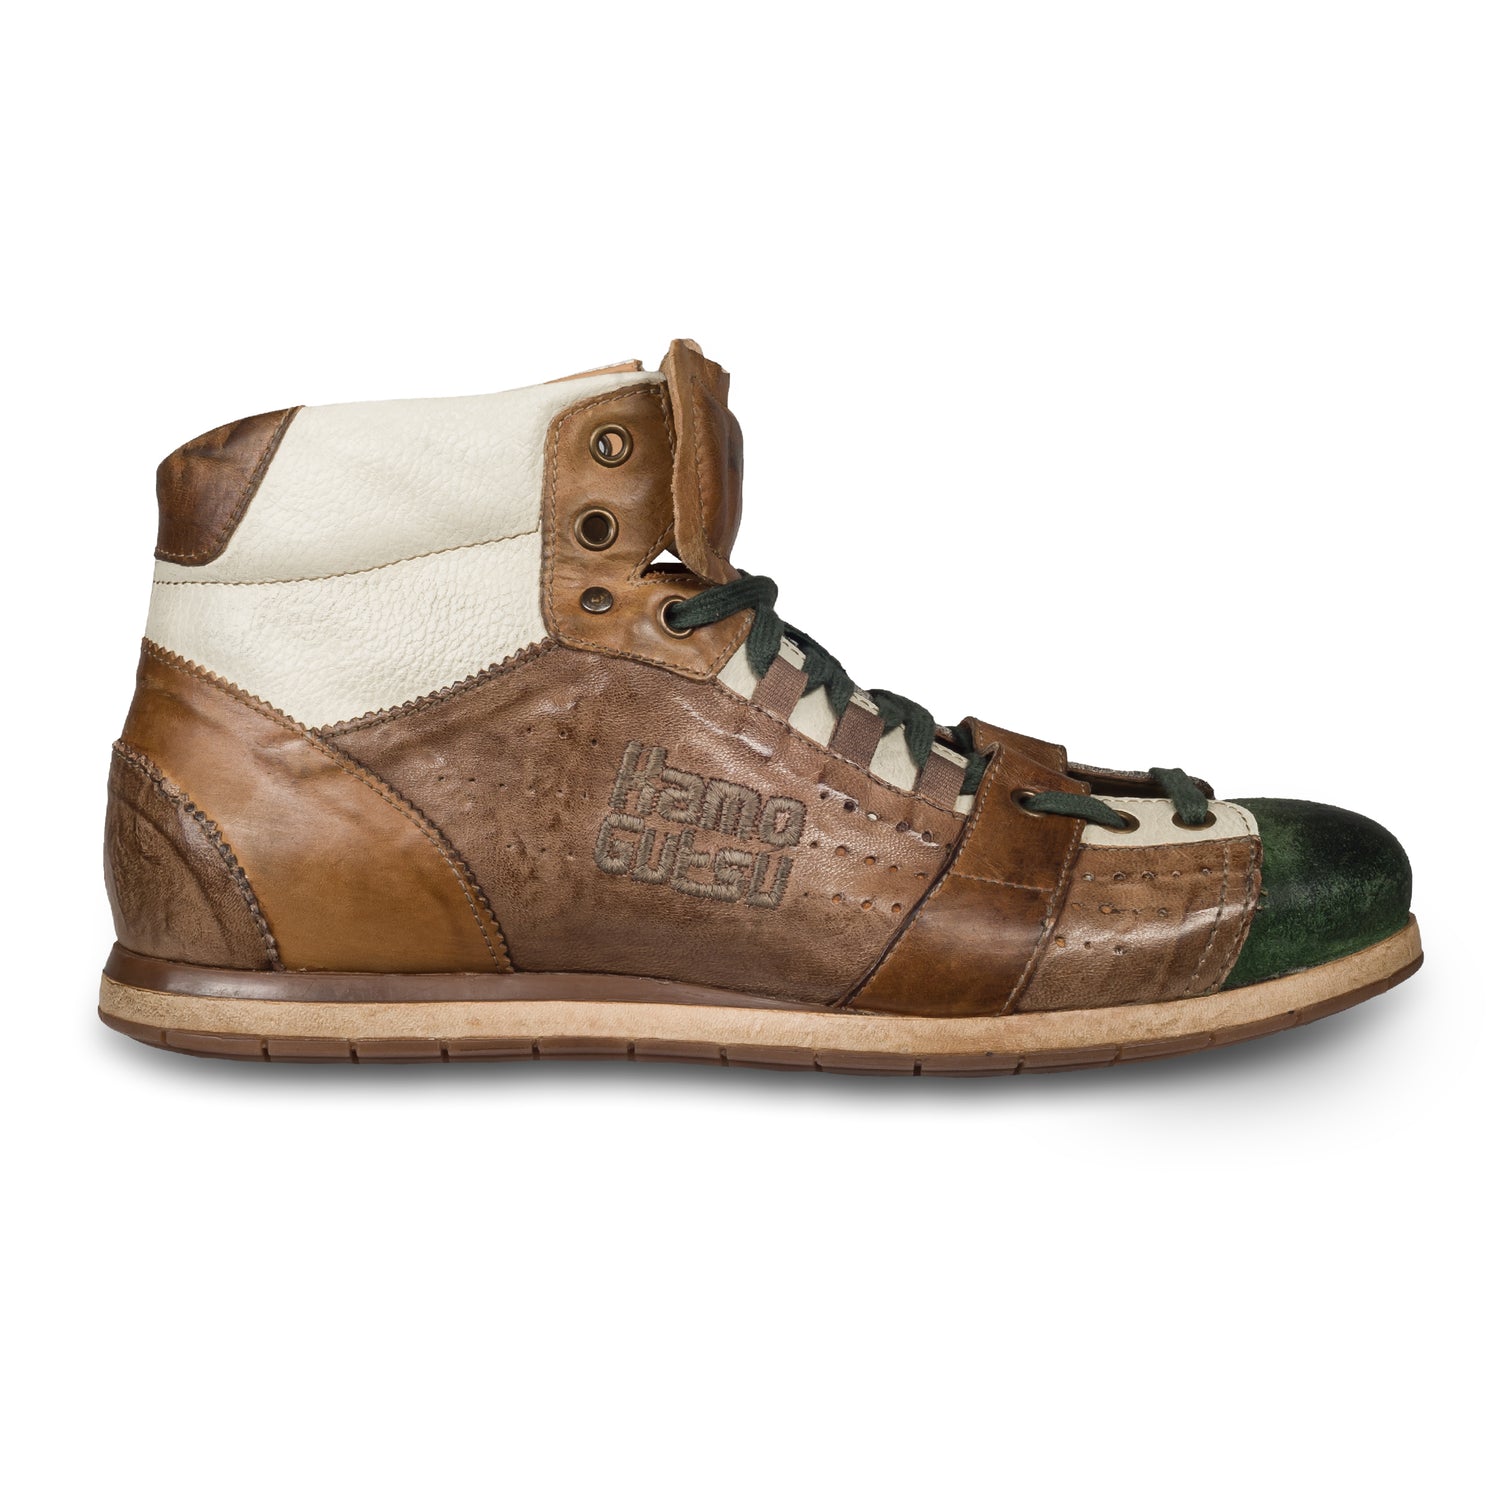 KAMO-GUTSU Italienische Herren Leder Sneaker Stiefel, braun/grün, Retro-Optik, High-Top, Modell TIFO-105 verde / taupe, Handgefertigt in Italien. Handgefertigt. Seitliche Ansicht der Außenseite rechter Schuh.